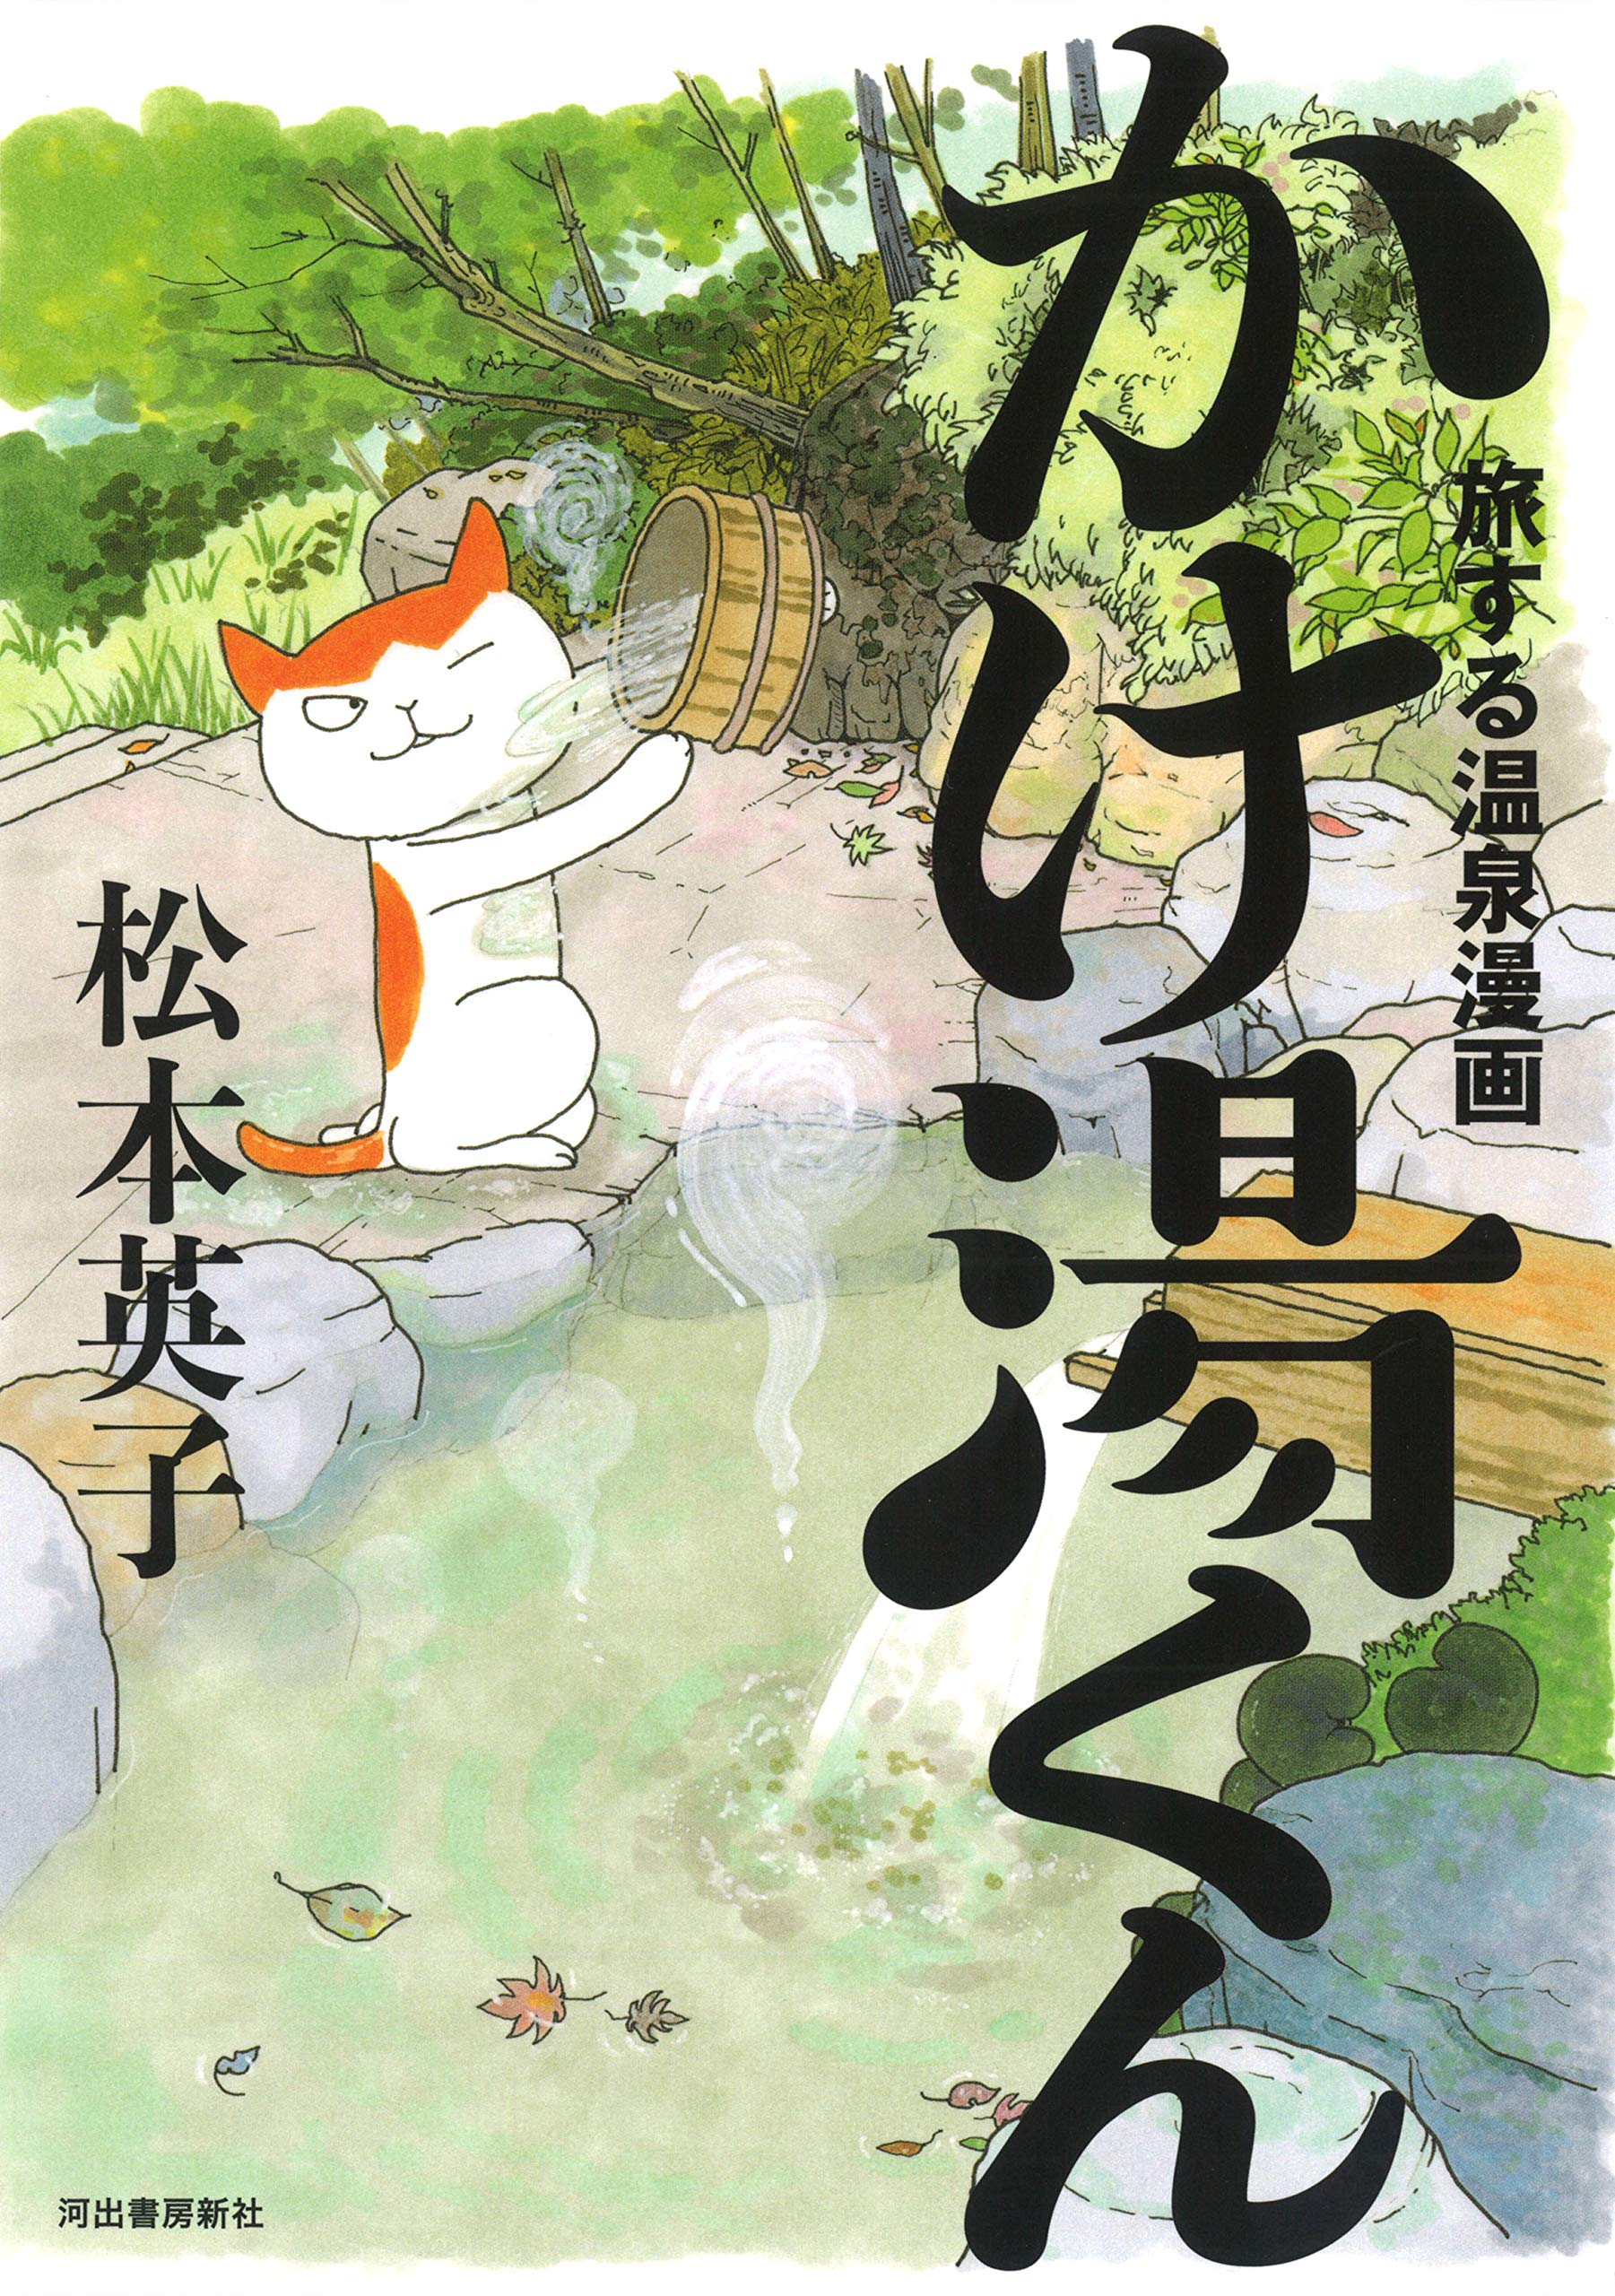 全国の温泉を旅するネコの かけ湯くん が活躍する 漫画家 松本英子 渾身の温泉賛歌コミックエッセイ発売 立ち読み公開中 Web河出